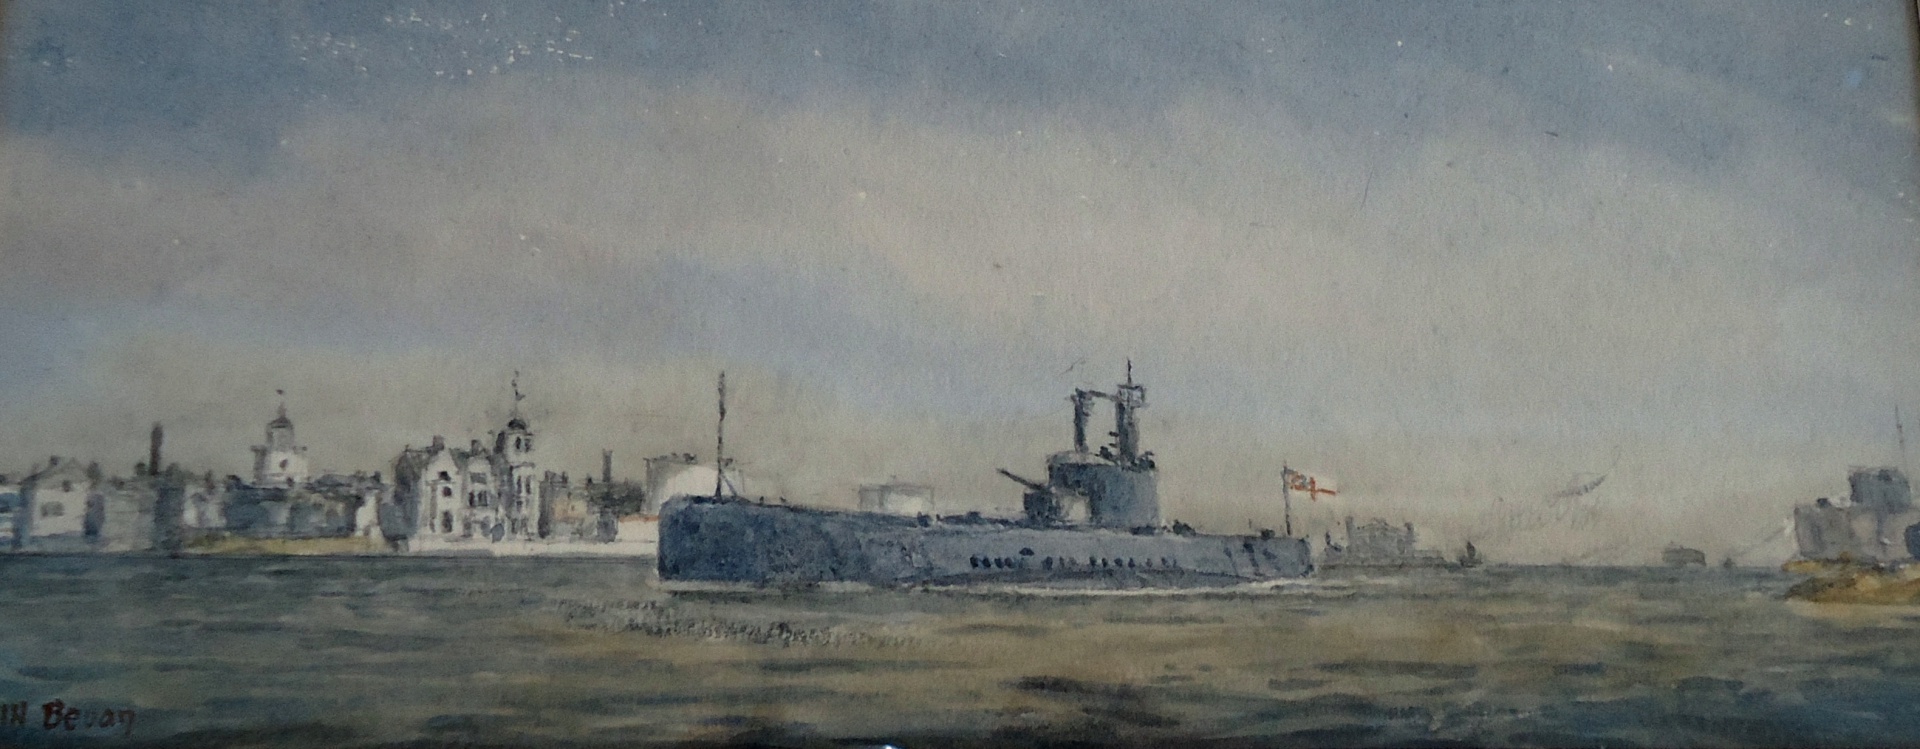 HMS PORPOISE, minelaying submarine, entering Portsmouth, c.1934